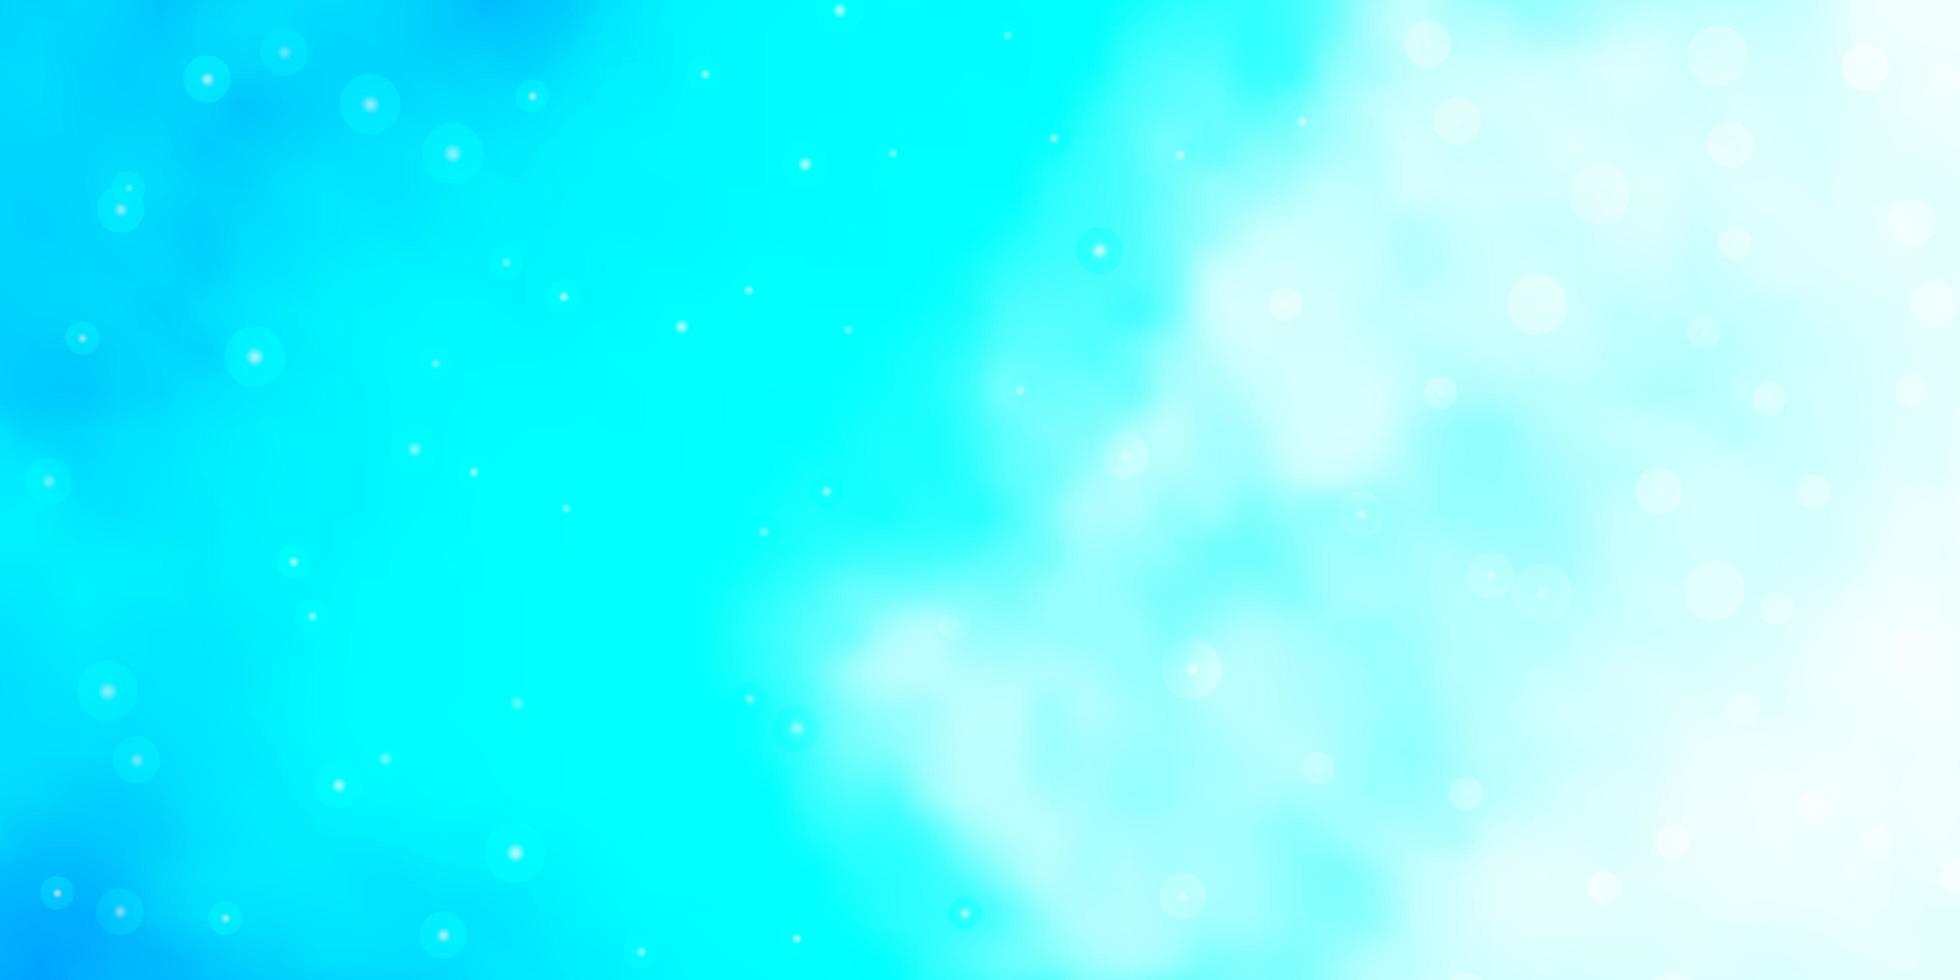 fond de vecteur bleu clair avec des étoiles colorées